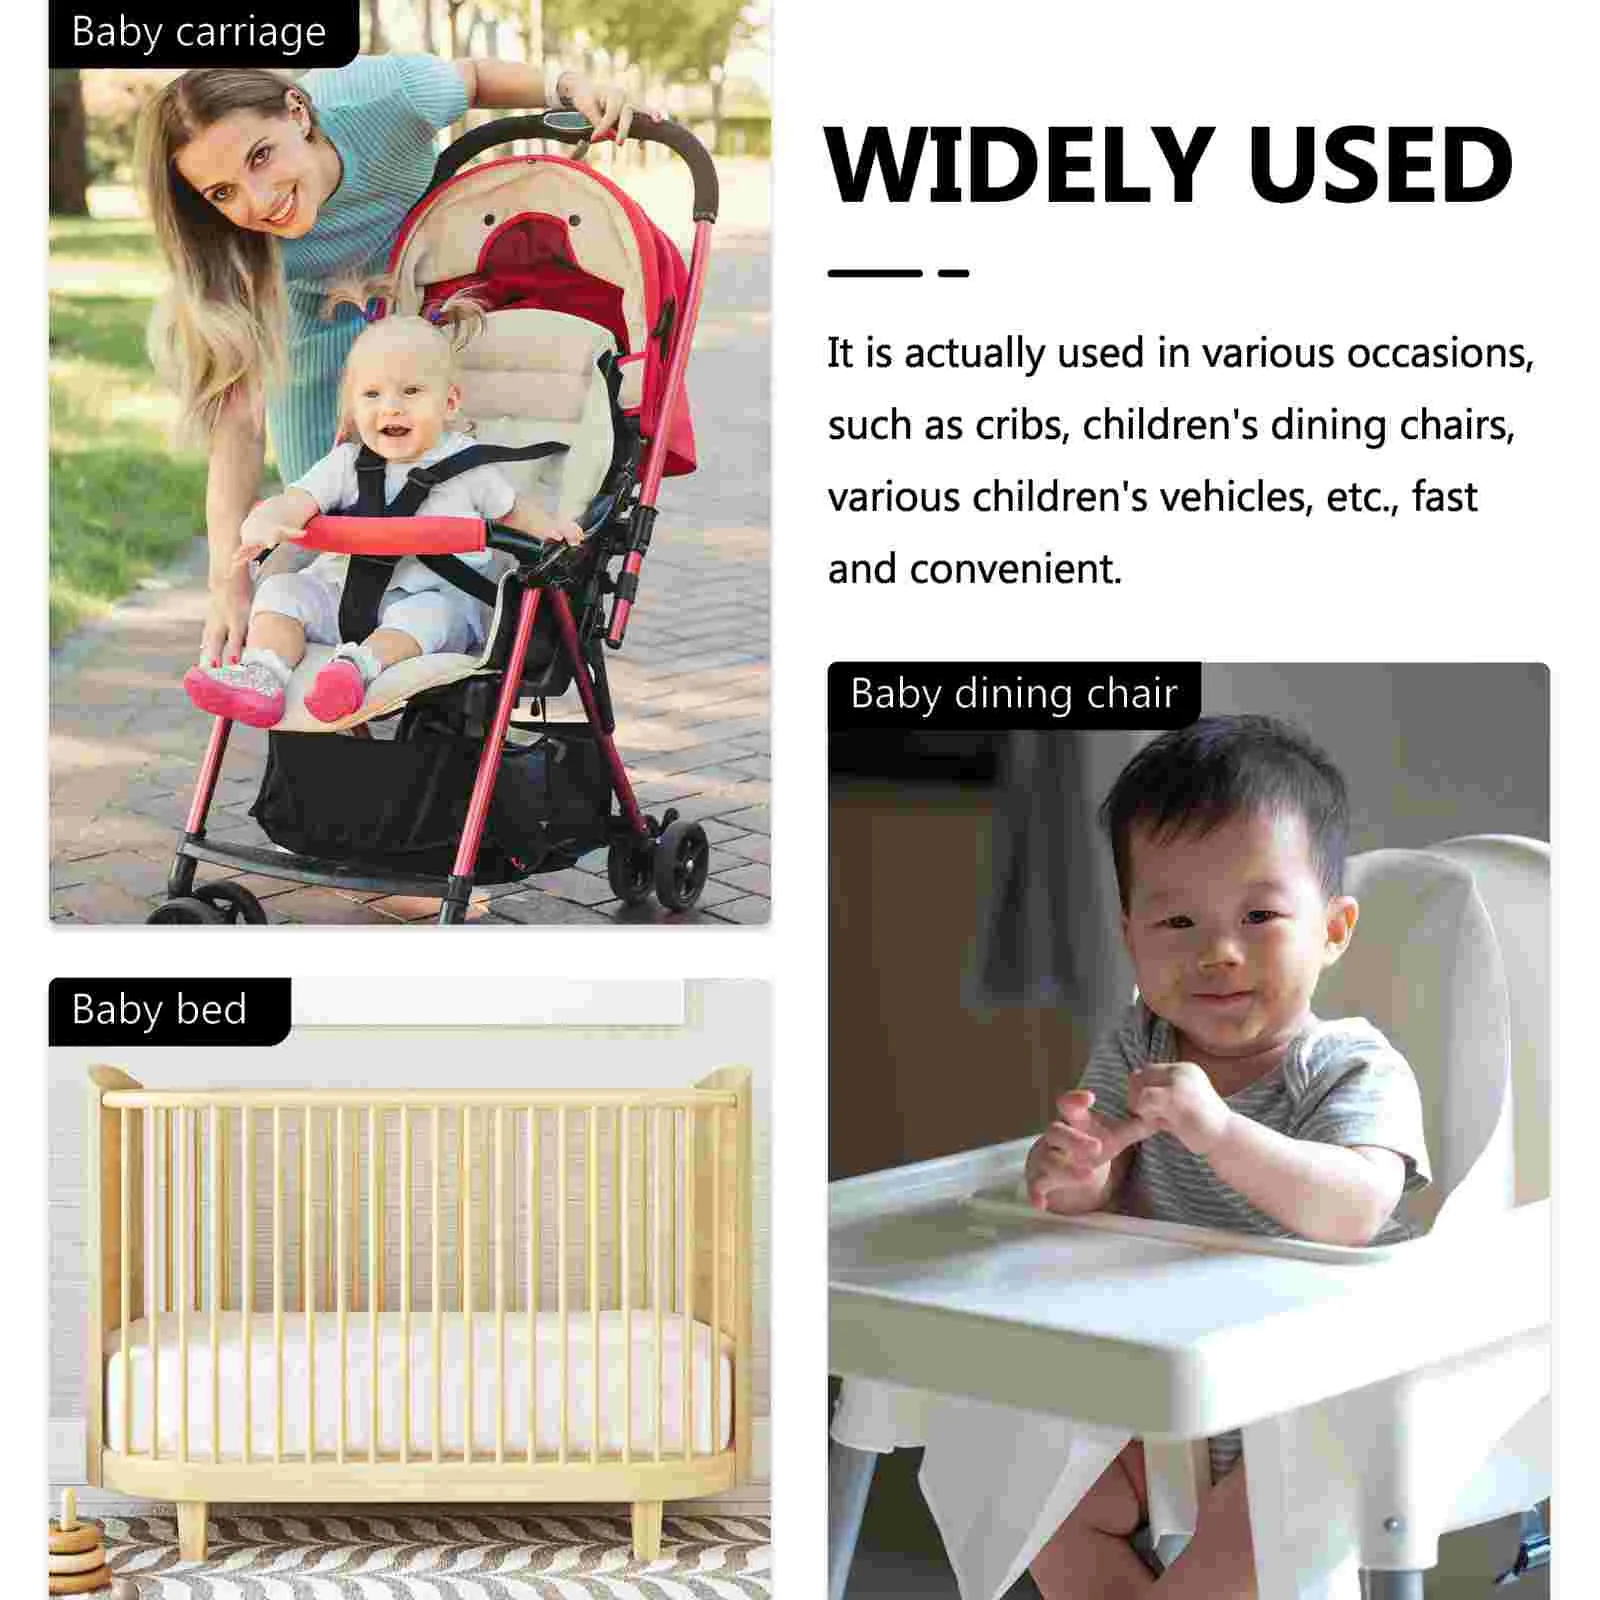 Portátil Baby Wipes Box, recipiente molhado, caixa de tecido ao ar livre, distribuidor, suporte, branco, viagens